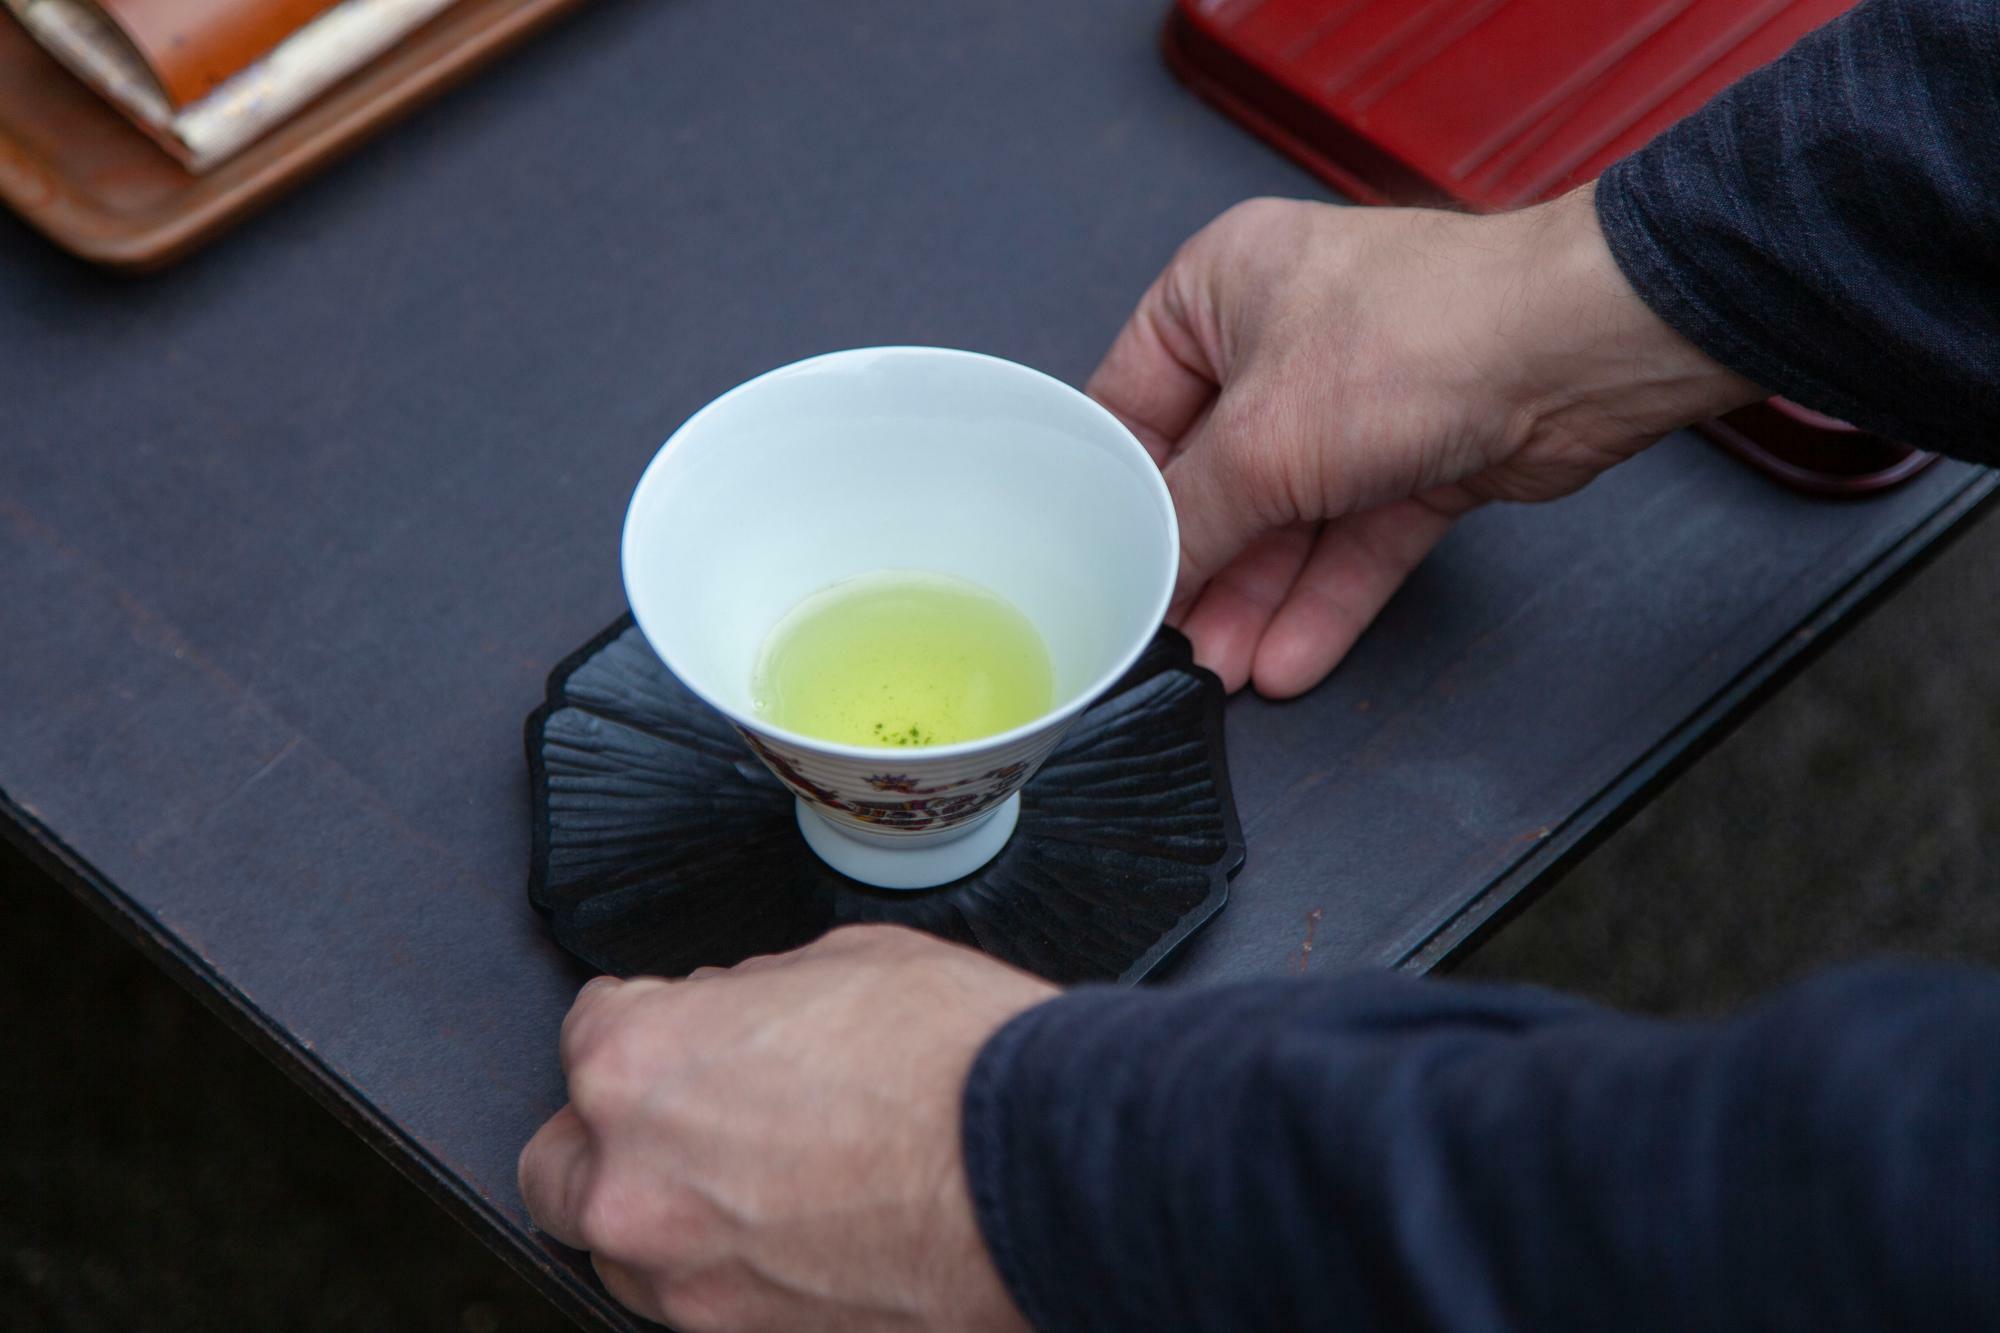 黄檗売茶流では玉露のお点前でもこのような大き目のお茶碗を使うことがあるそう。どなたでも飲みやすいようにとデザインされたものだとか。